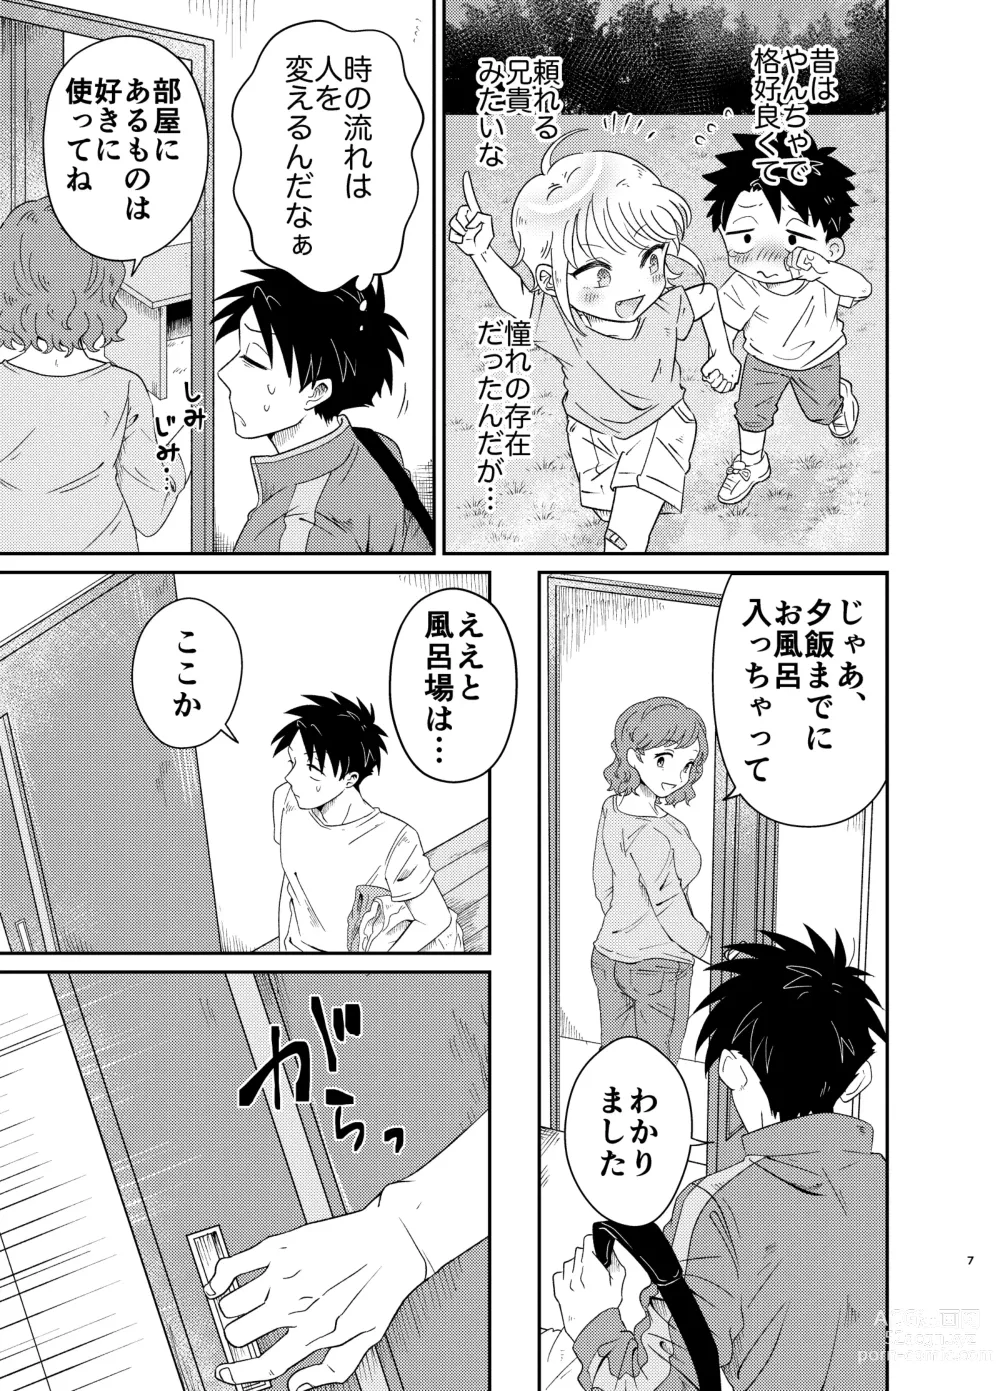 Page 7 of doujinshi Mechakucha Kawaikute Ecchi na Itoko wa Suki desu ka?